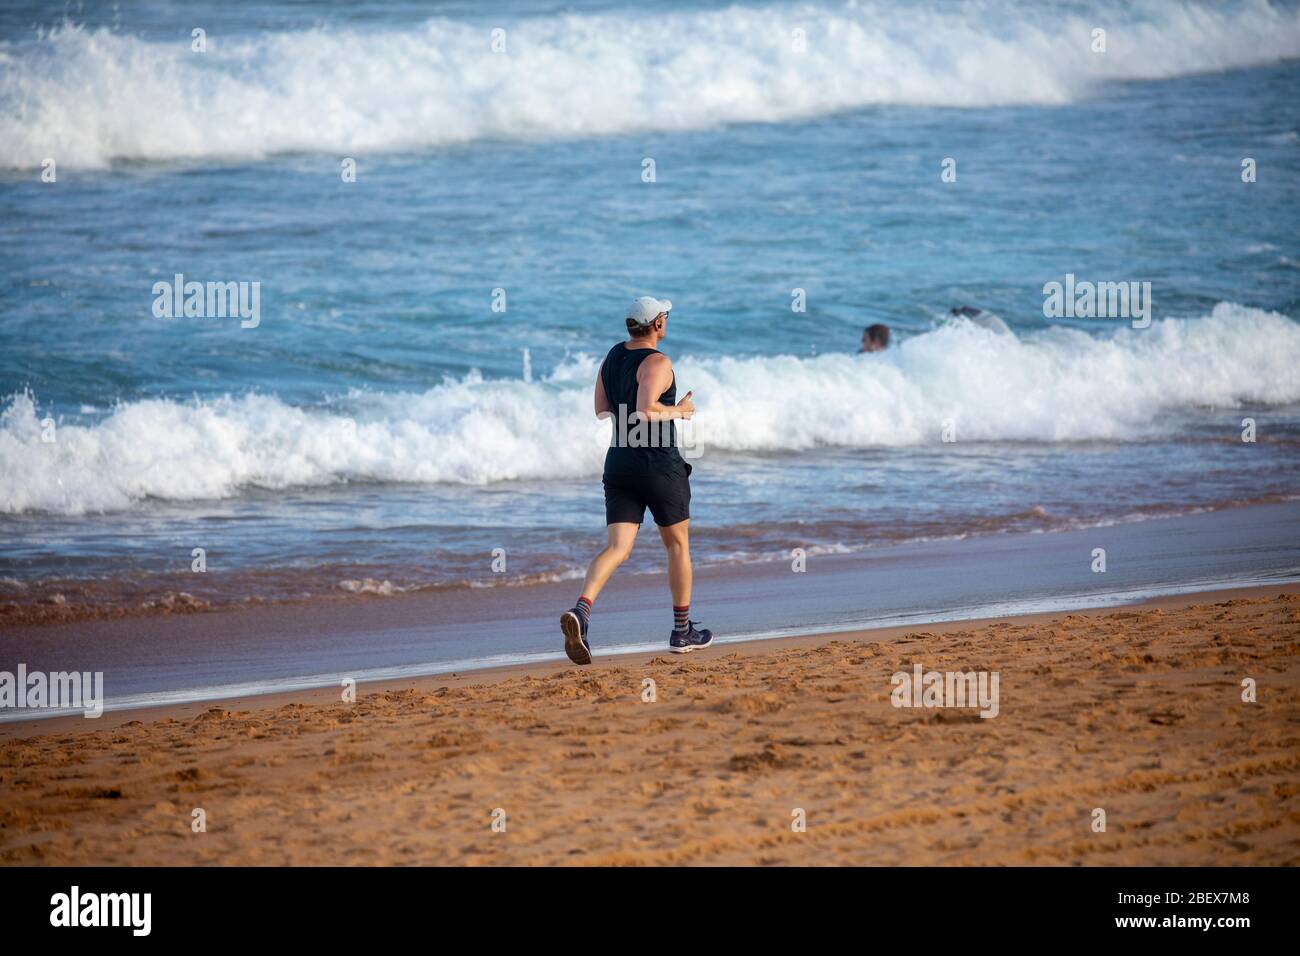 Homme australien qui fait du jogging sur la plage avalon de Sydney pendant l'éclosion de coronavirus pour rester en forme, Sydney, Australie Banque D'Images